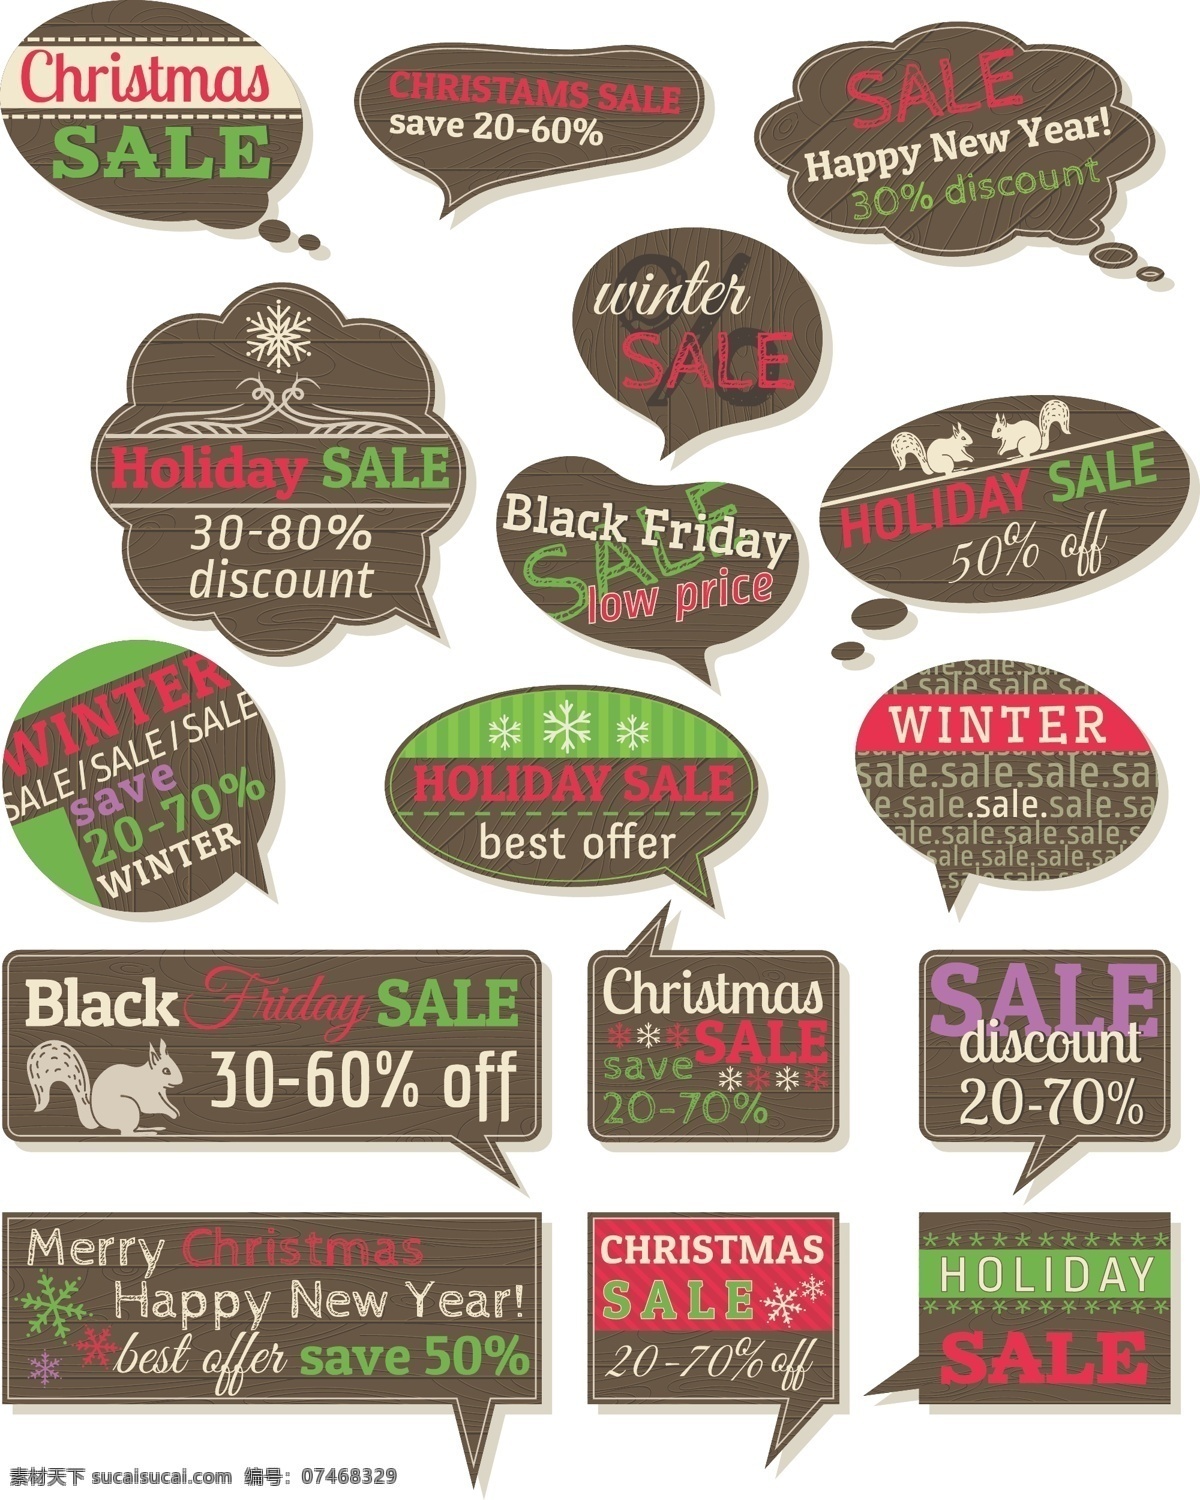 圣诞节 主题 标签 矢量 sale 促销 对话框 模板 设计稿 松鼠 素材元素 雪花 图案 折扣 销售 源文件 矢量图